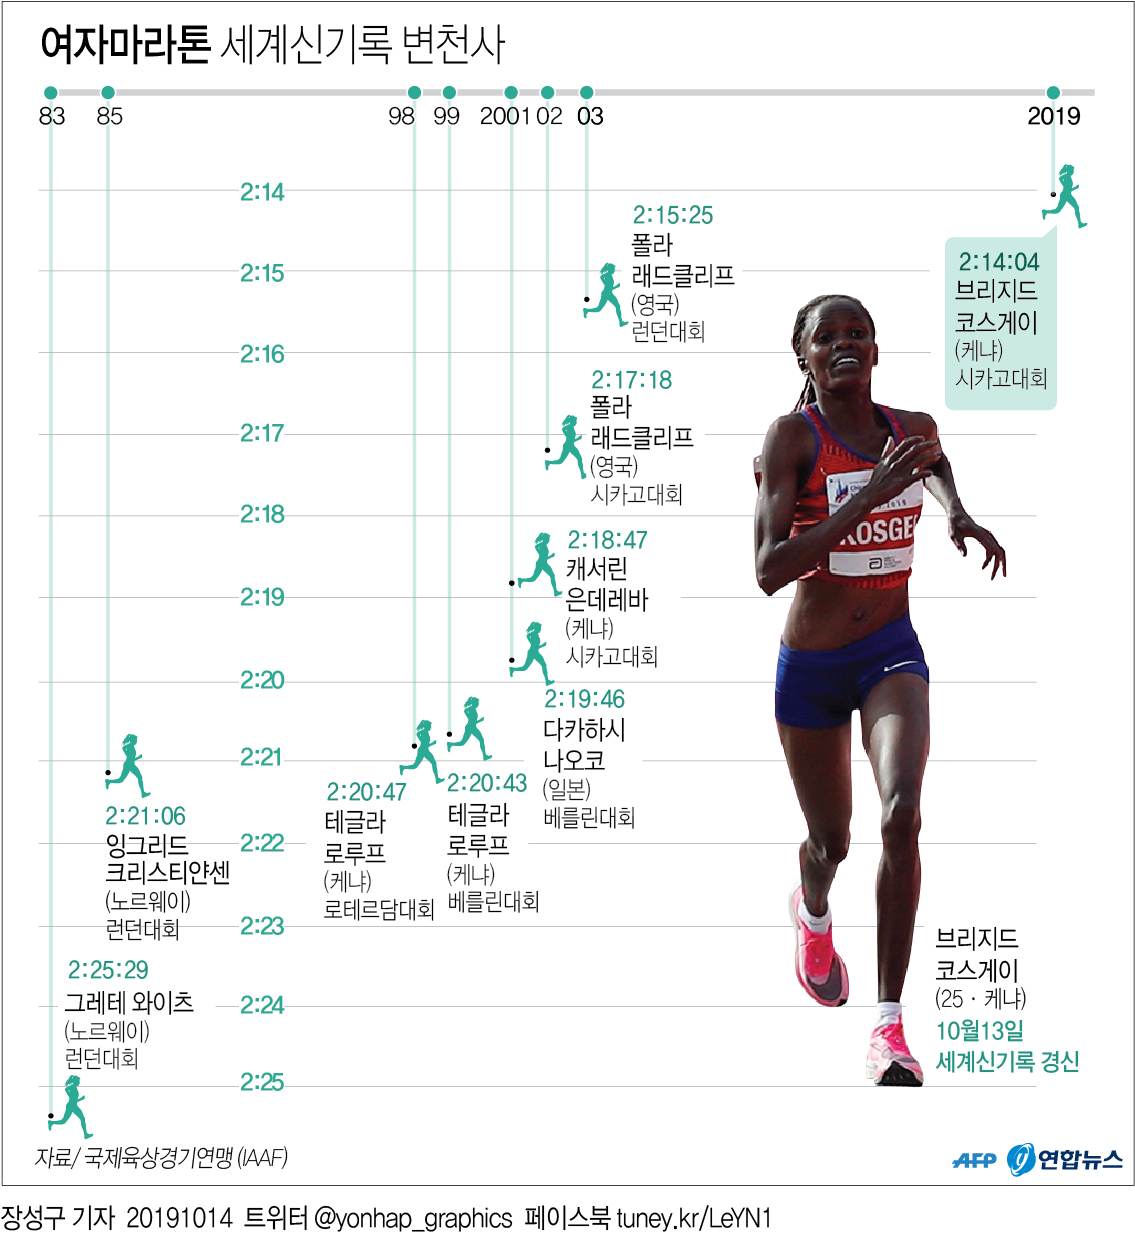 [그래픽] 여자마라톤 세계신기록 변천사